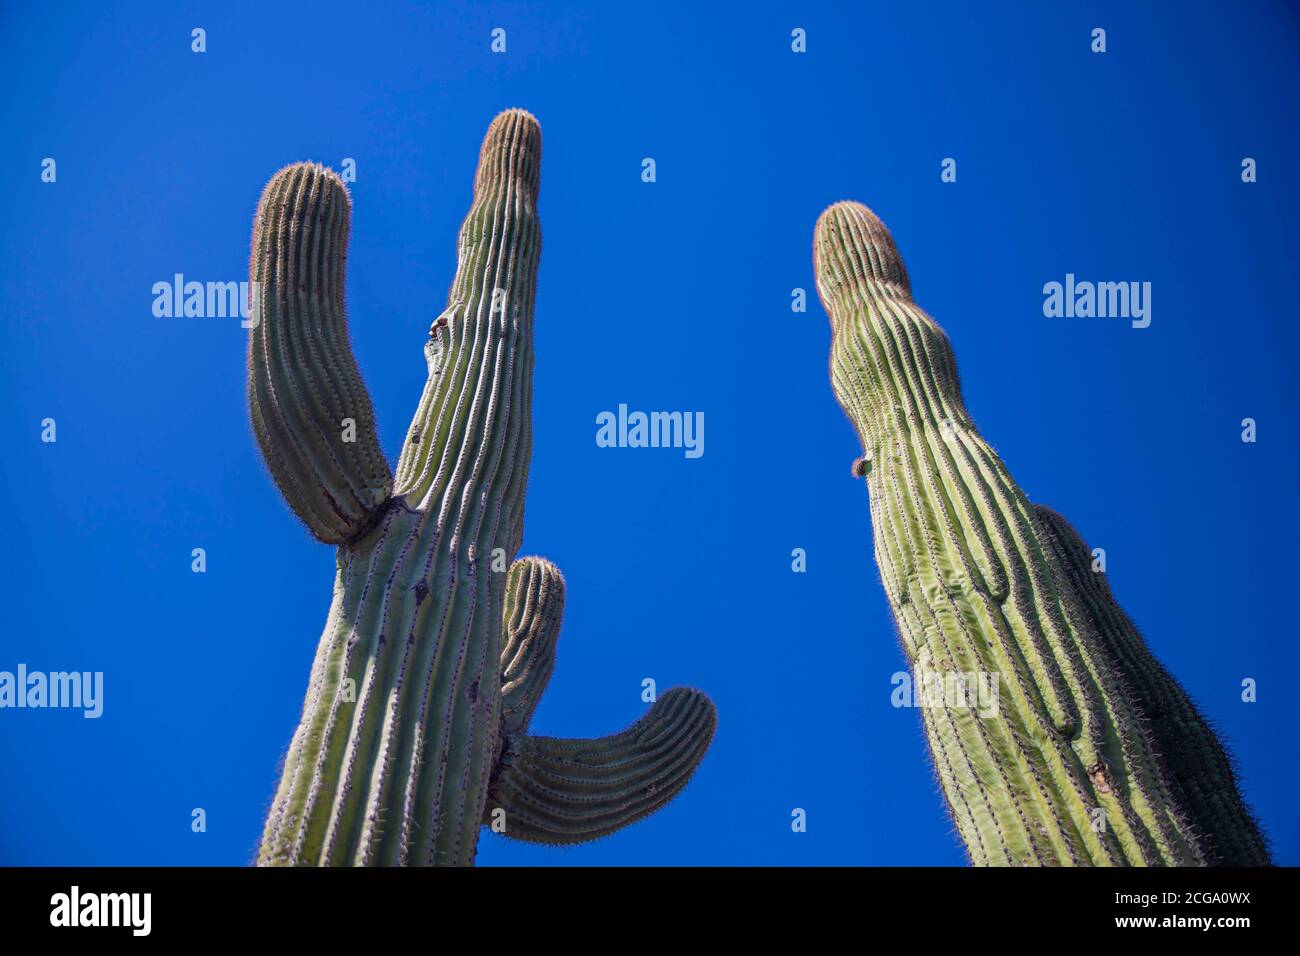 Cactus gigante mexicano, Pachycereus pringlei, cardón gigante mexicano o cactus elefante, especie de cactus nativa del noroeste de México en los estados de Baja California, Baja California Sur y Sonora. Desierto de Sonora en la sierra de la Reserva de la Biosfera el Pinacate y gran Desierto de Altar en Sonora, México. Patrimonio de la Humanidad por la UNESCO. Ecosistema tipico entre la frontera del desierto de Arizona y Sonora. Plantas y vegetación cubierta del desierto. Arido, seco, sequia. Se le ha dado la palabra como cardón, un nombre derivado de la palabra española cardo, que significa 'car Foto de stock